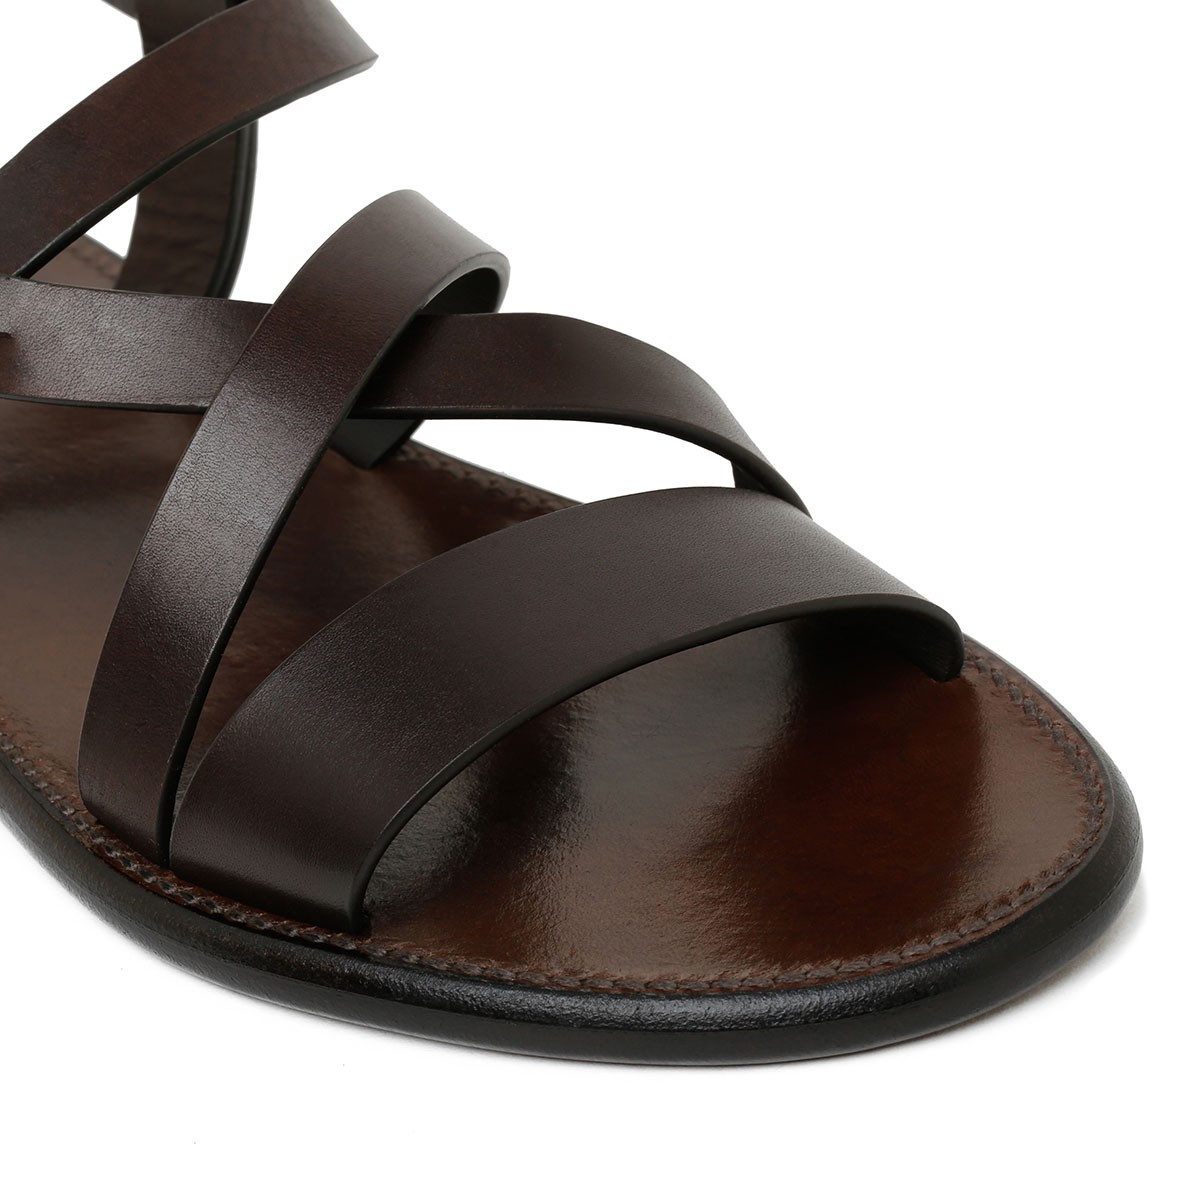 Dark brown leather gladiator sandals